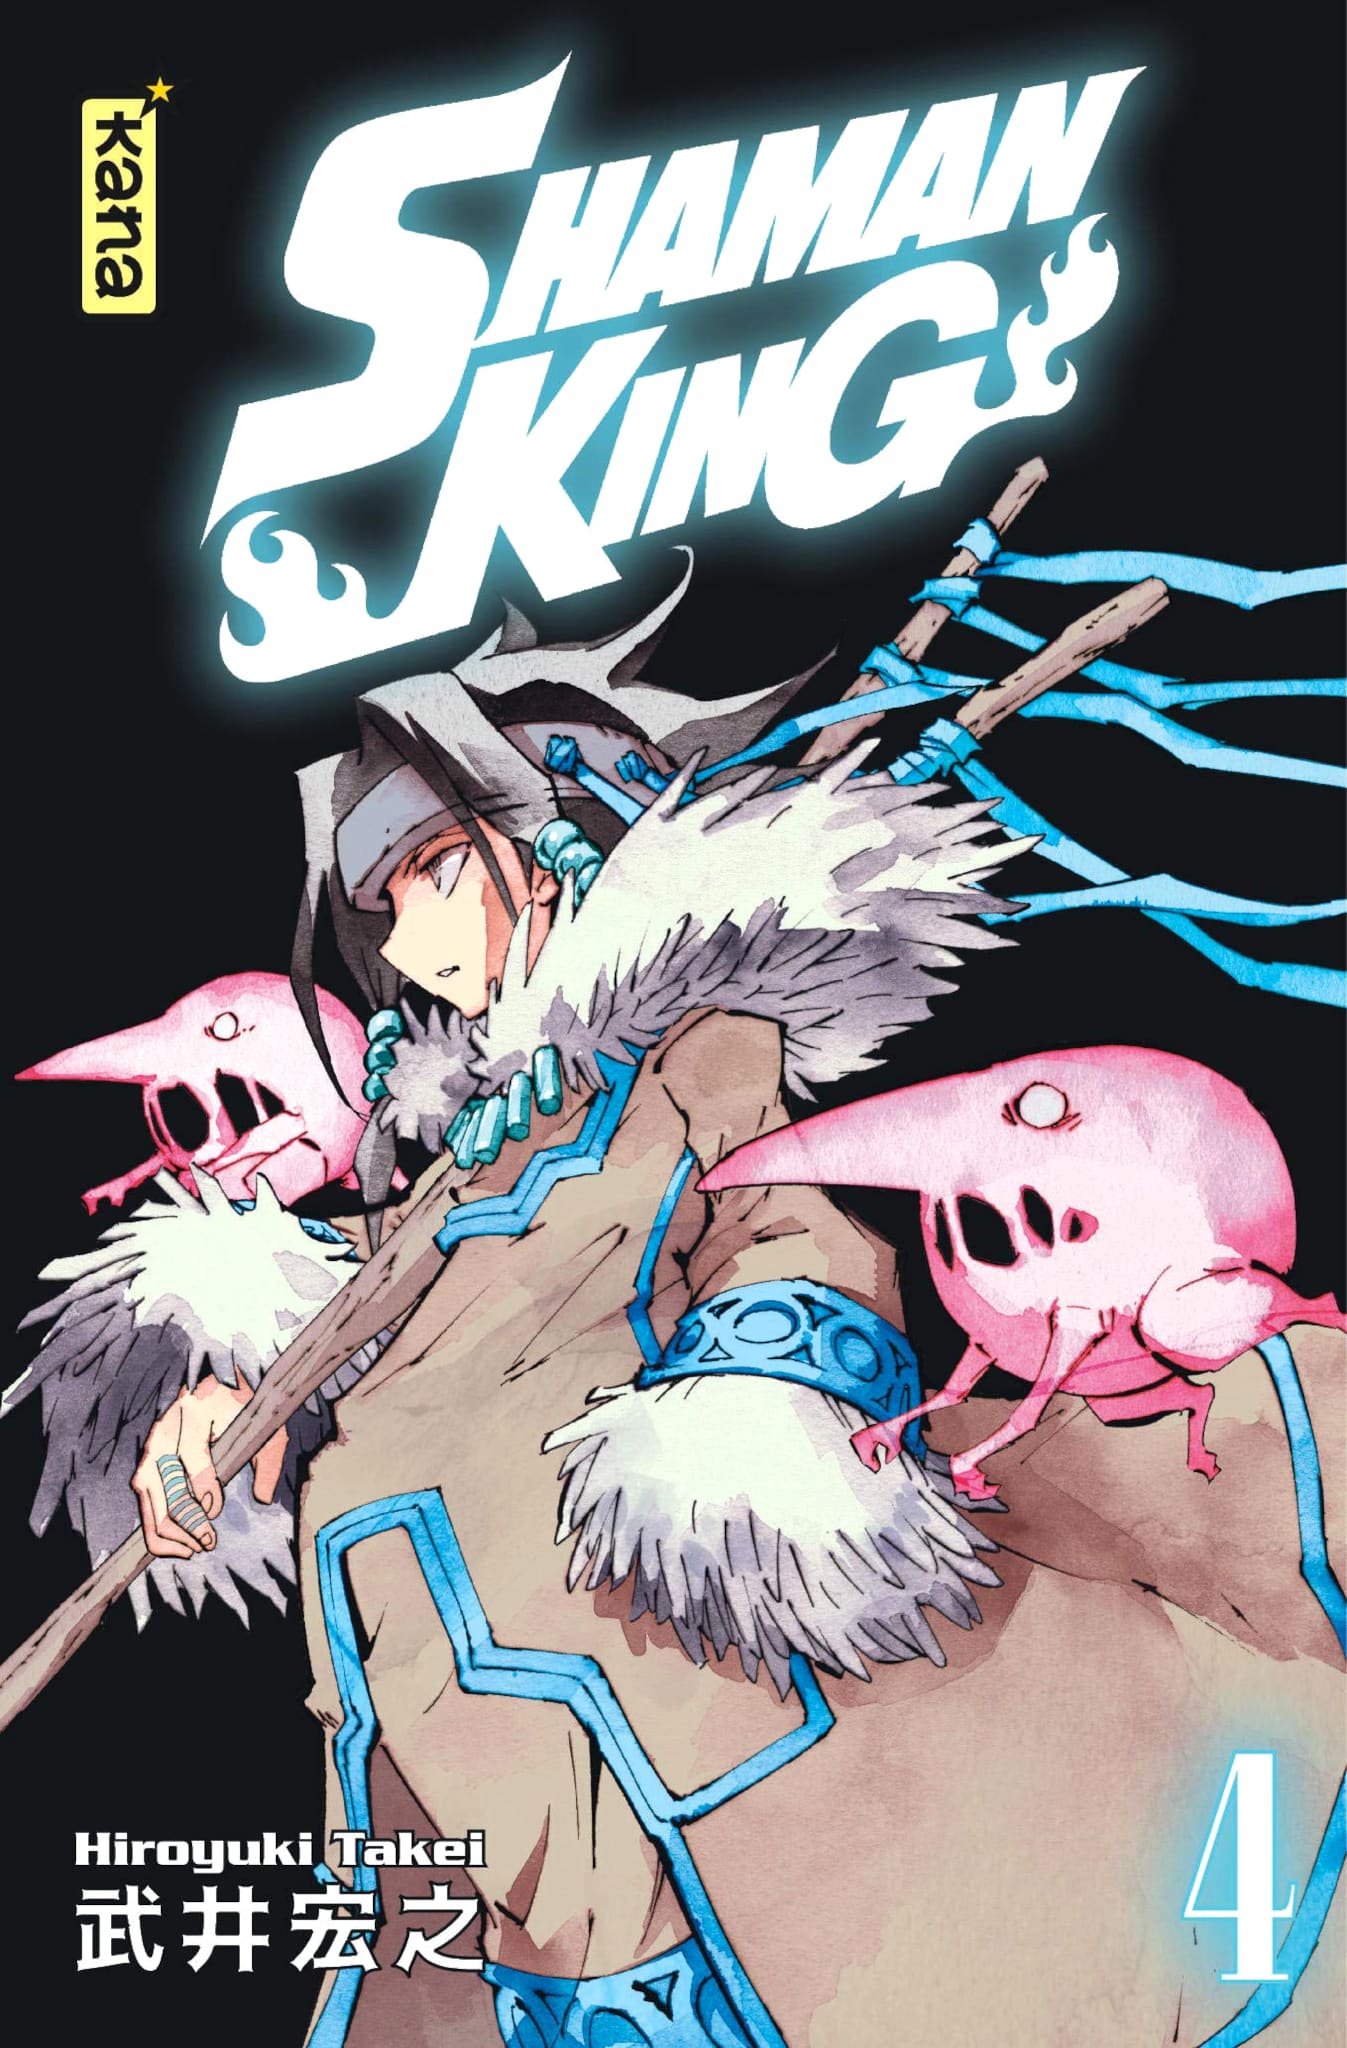 Tome 4 du manga Shaman King Star Edition